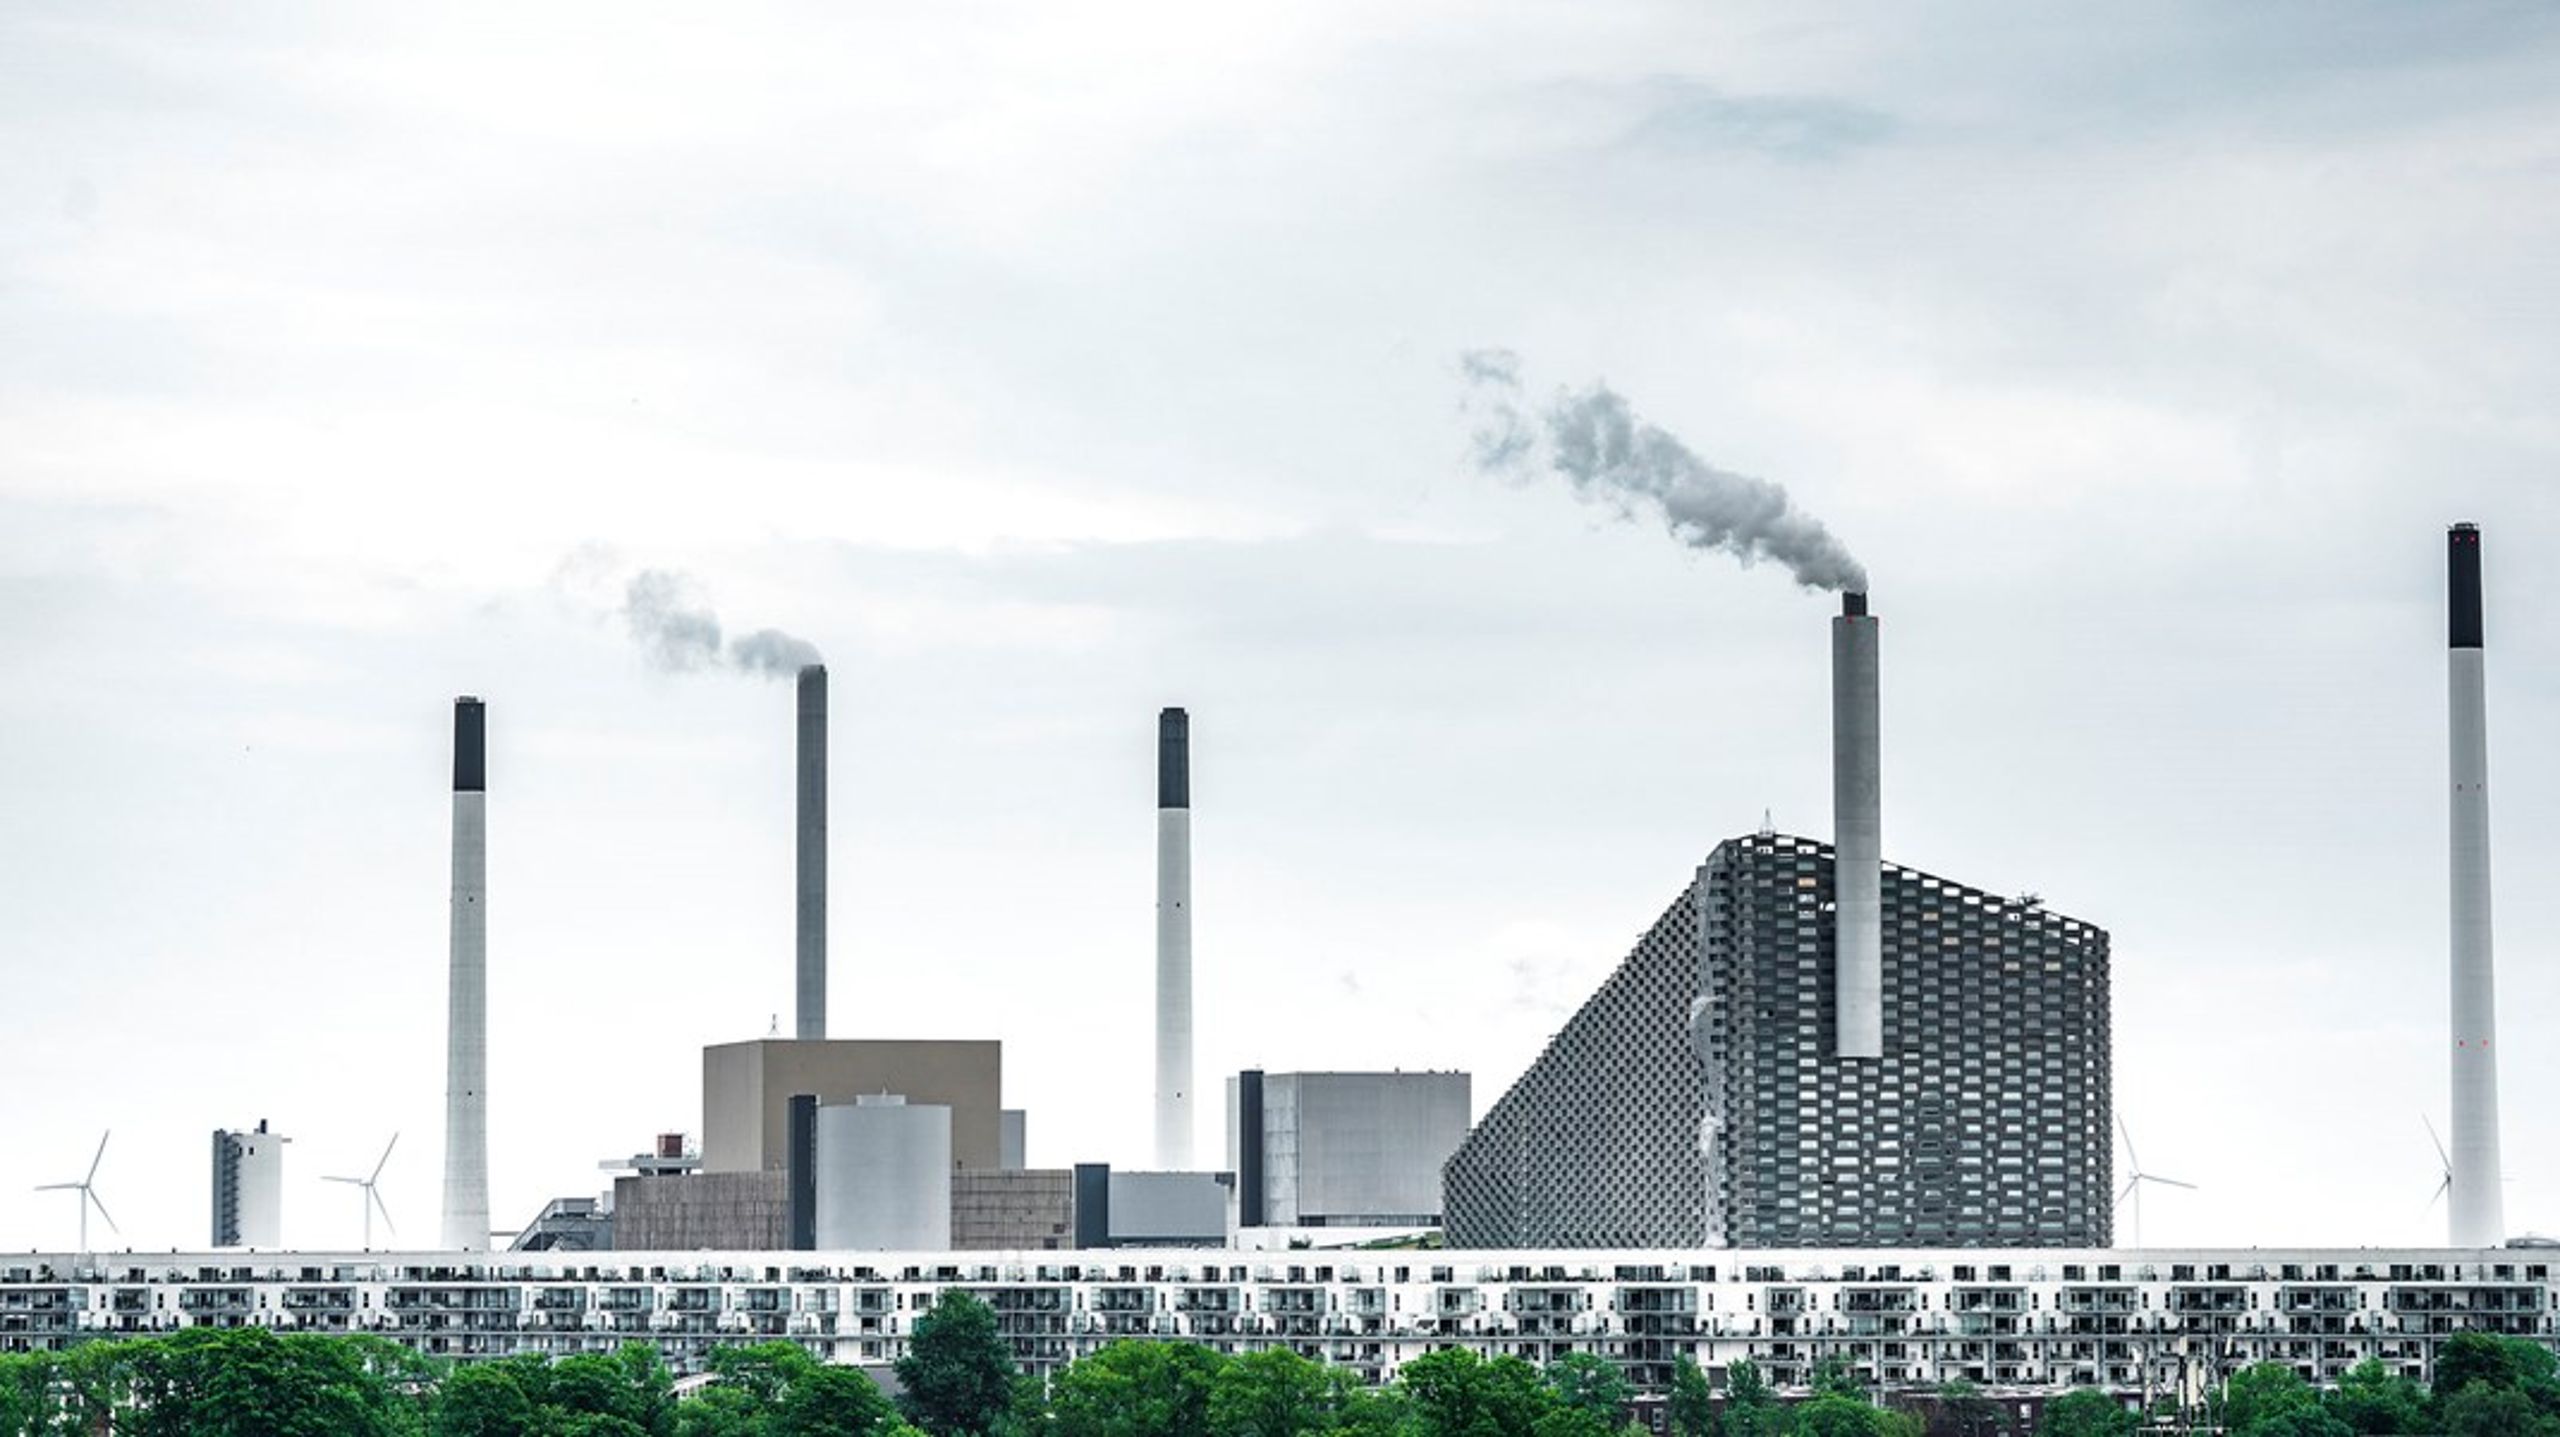 Forsøget med at fange CO2 fra ARC er blandt de afgørende succeskriterier for Københavns nye erhvervsstrategi.